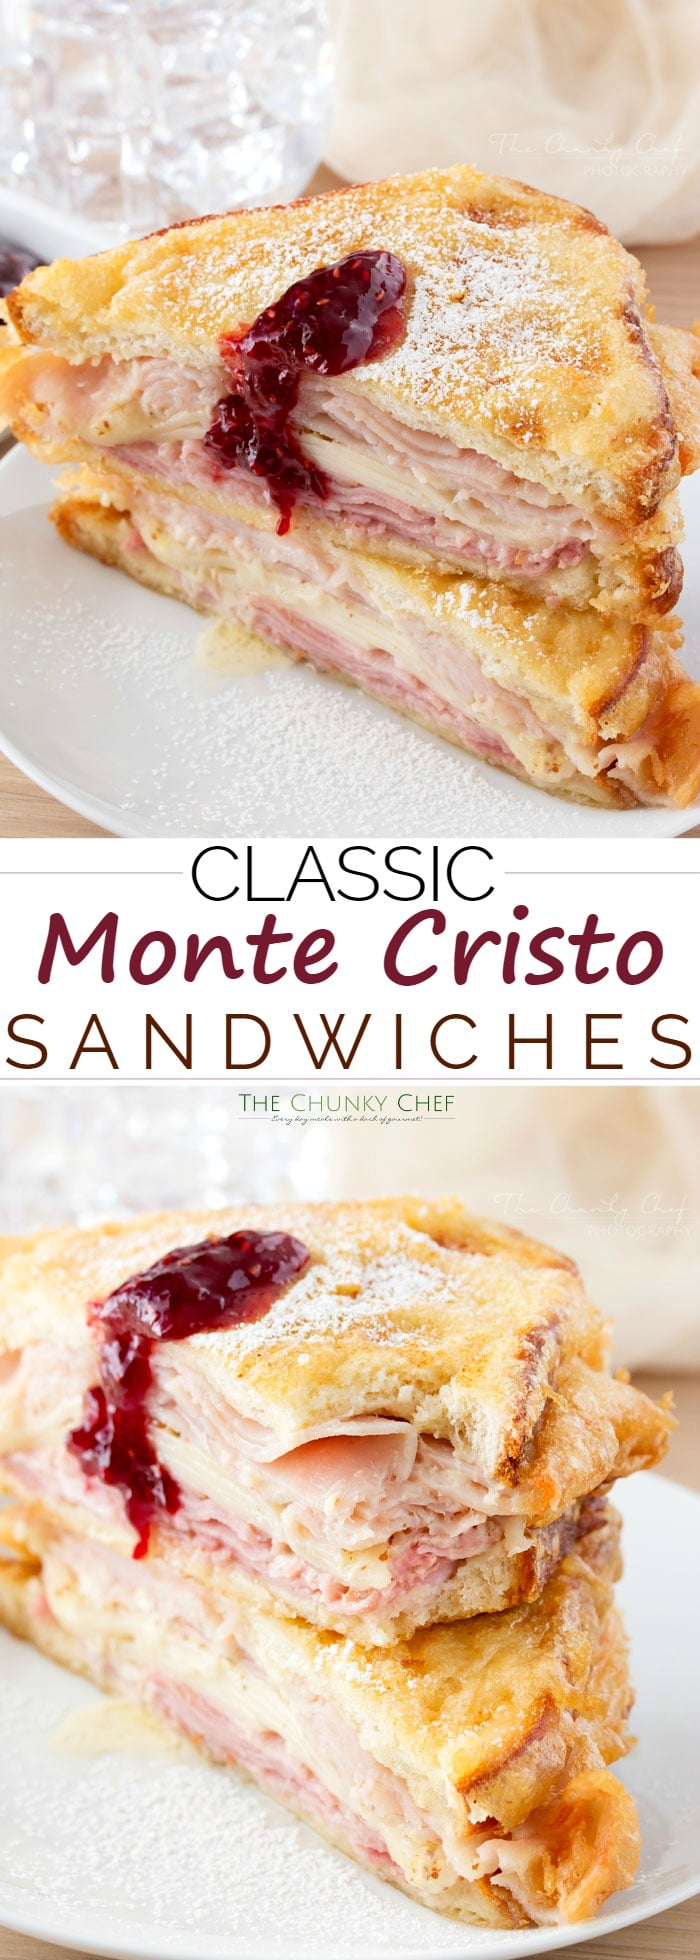 original monte cristo sandwich recipe